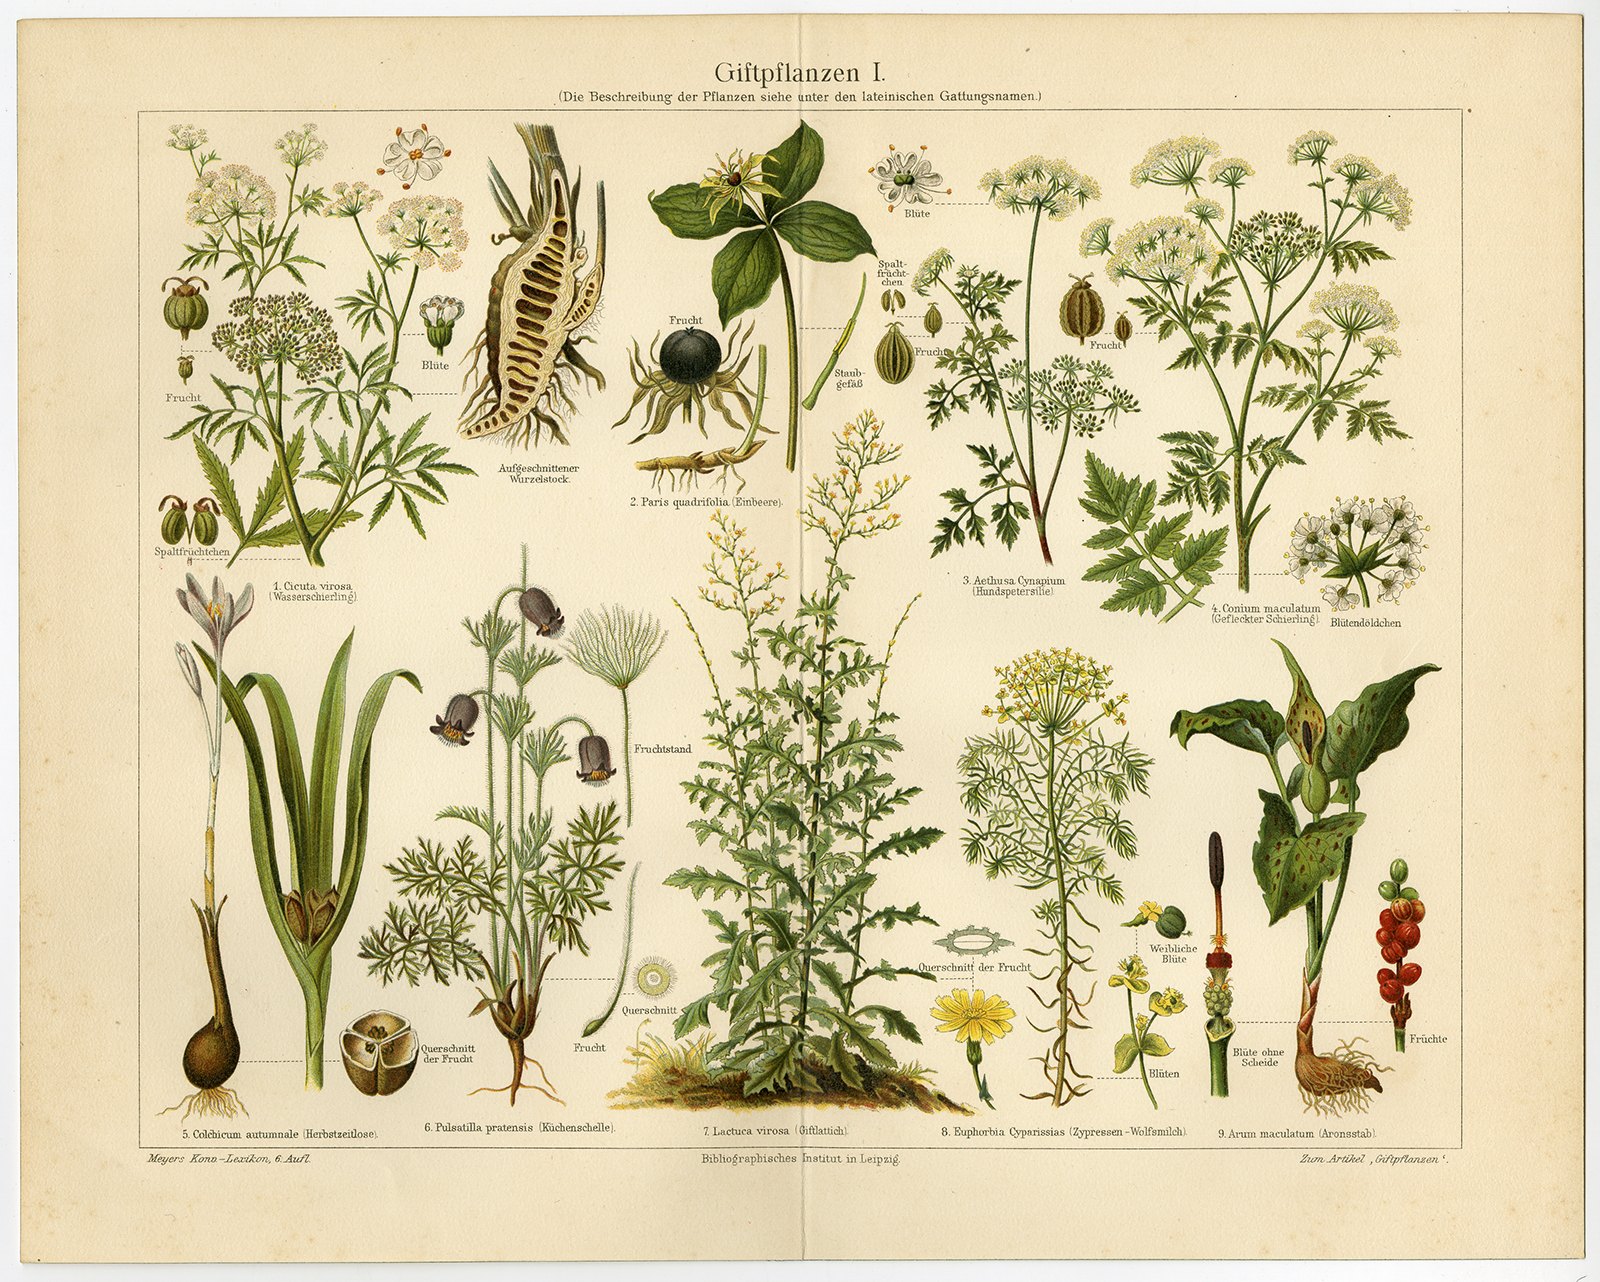 Старинные изображения растений